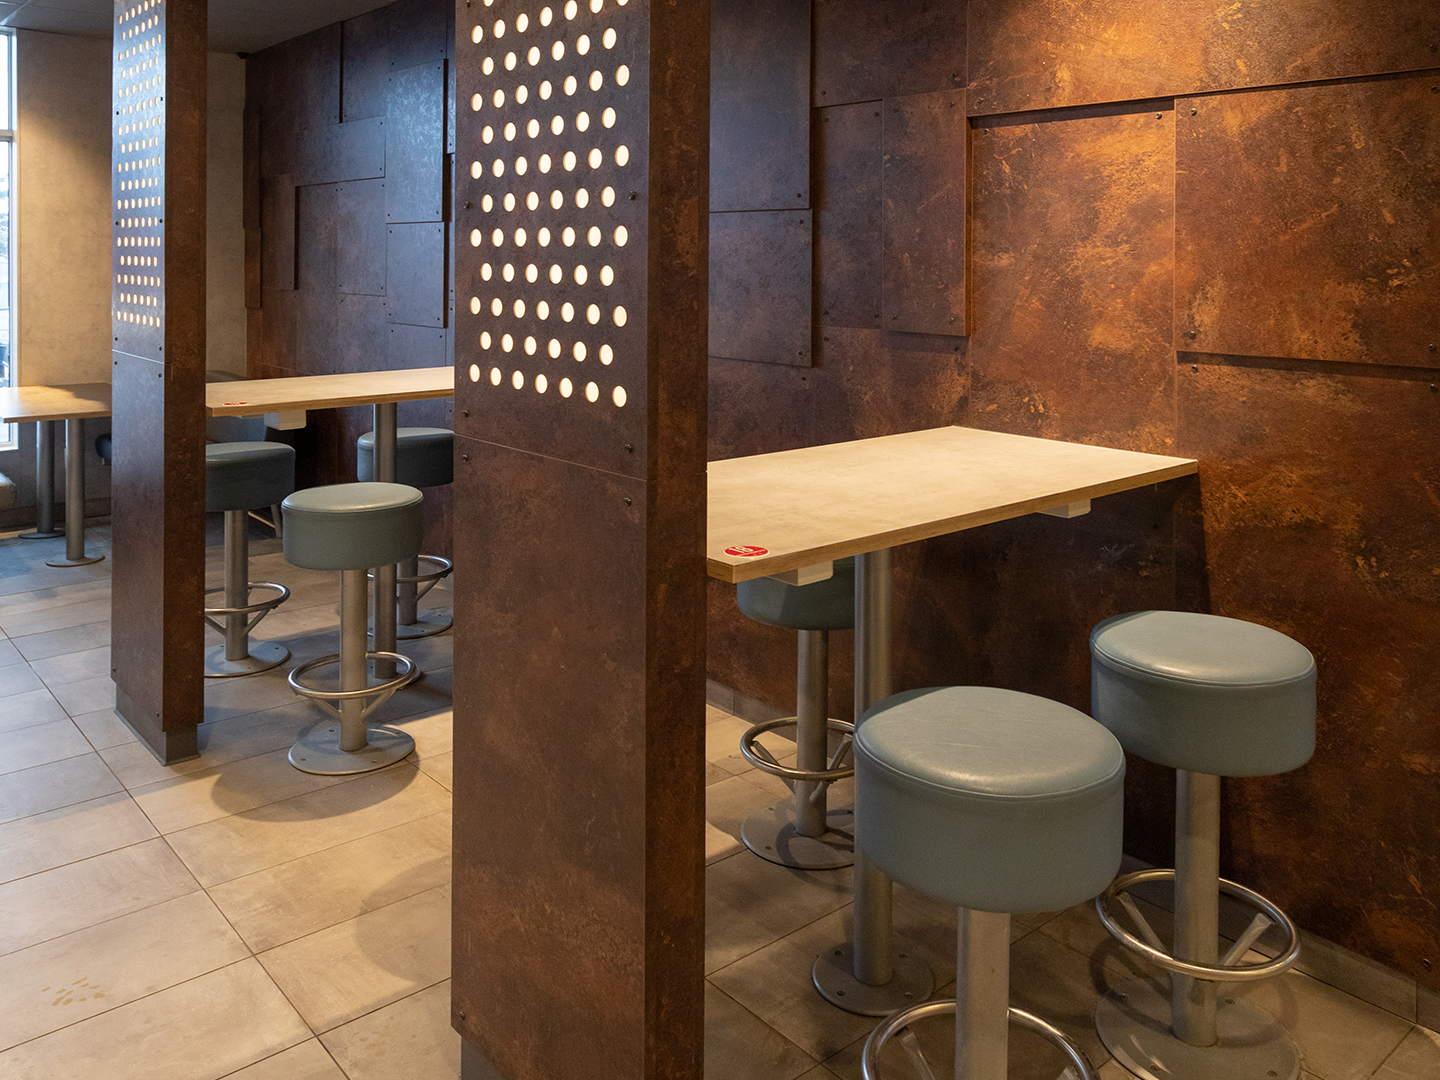 Conception de restaurant McDonald's - Meubles de restauration sur mesure - McDonald's Lim - Luminaires sur mesure - Meubles sur mesure